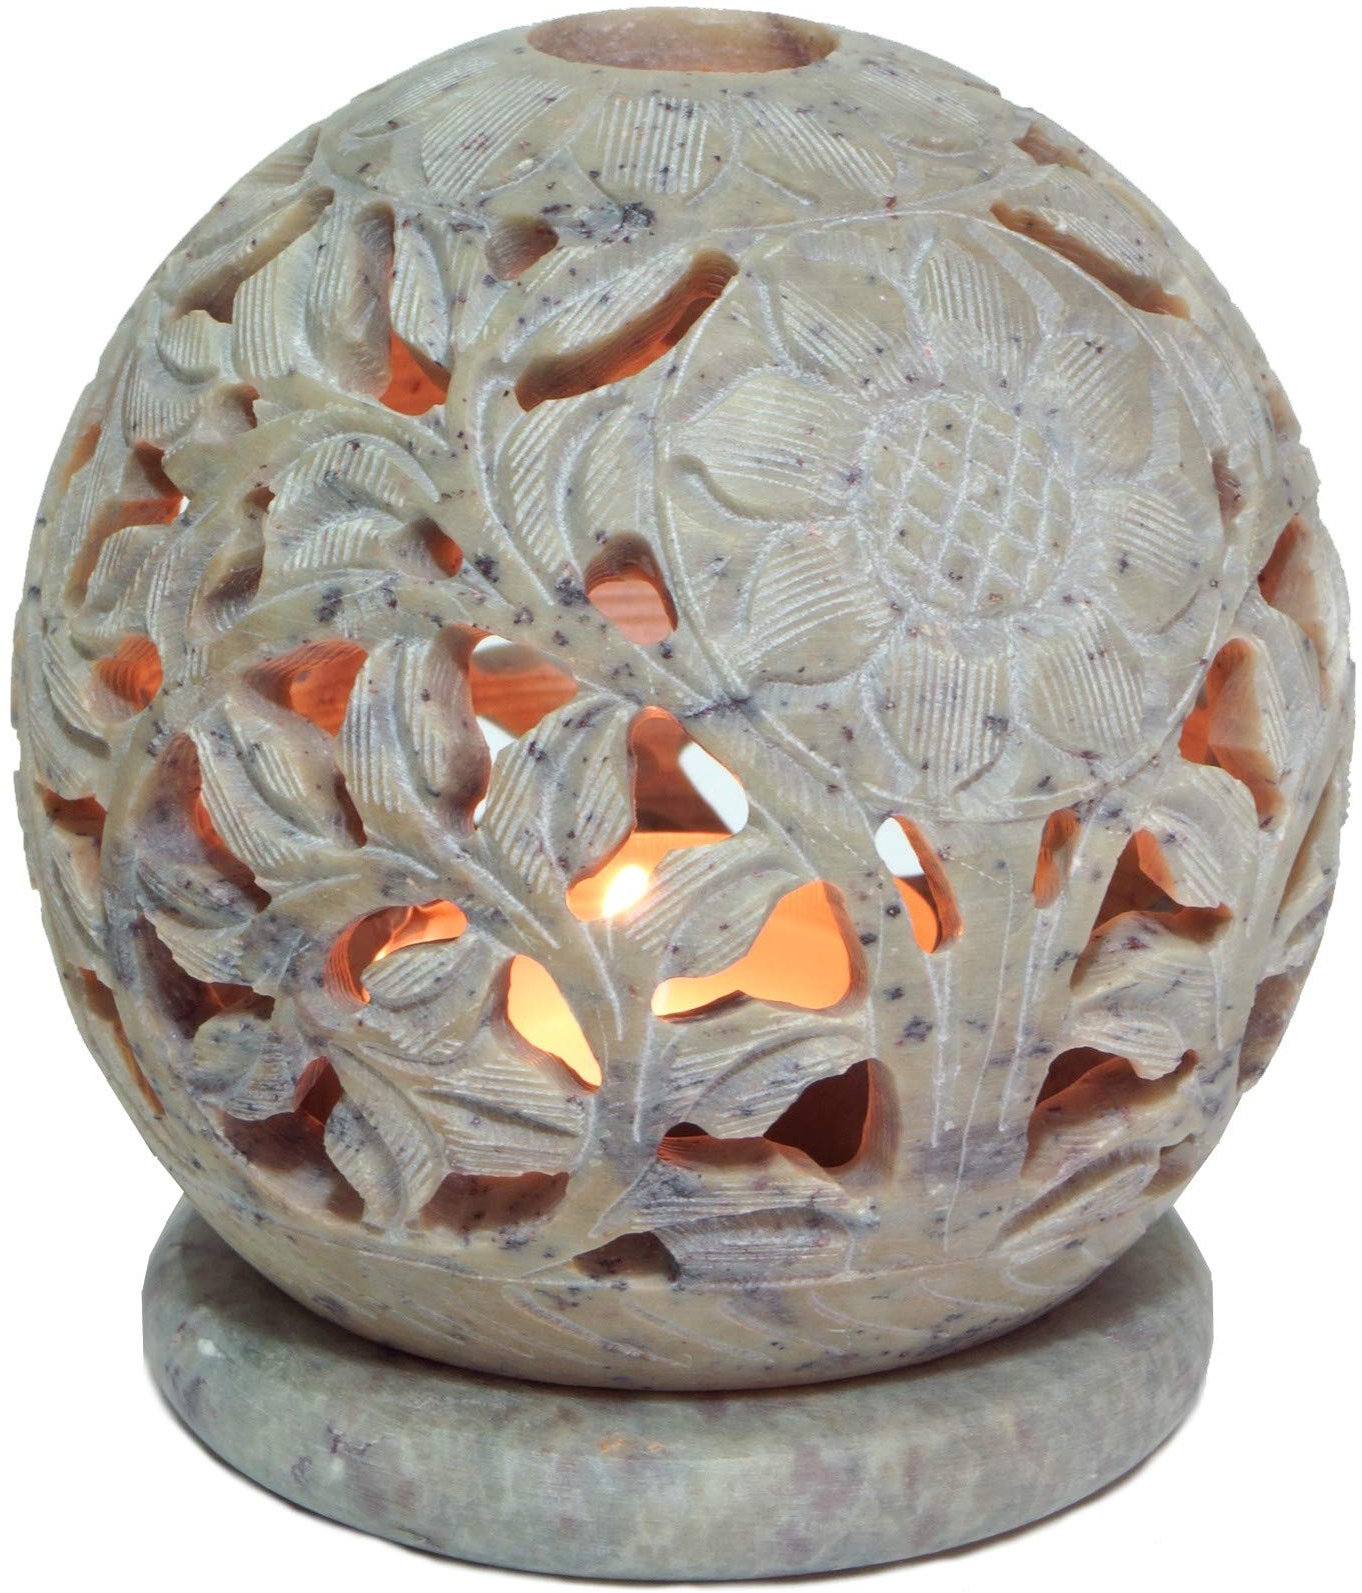 GURU SHOP Indisches Duft Potpourri Behälter aus Speckstein, Teelicht - Kugel Blüten, Creme-weiß, 8,5x8x8 cm, Duftlampen & Öllampen